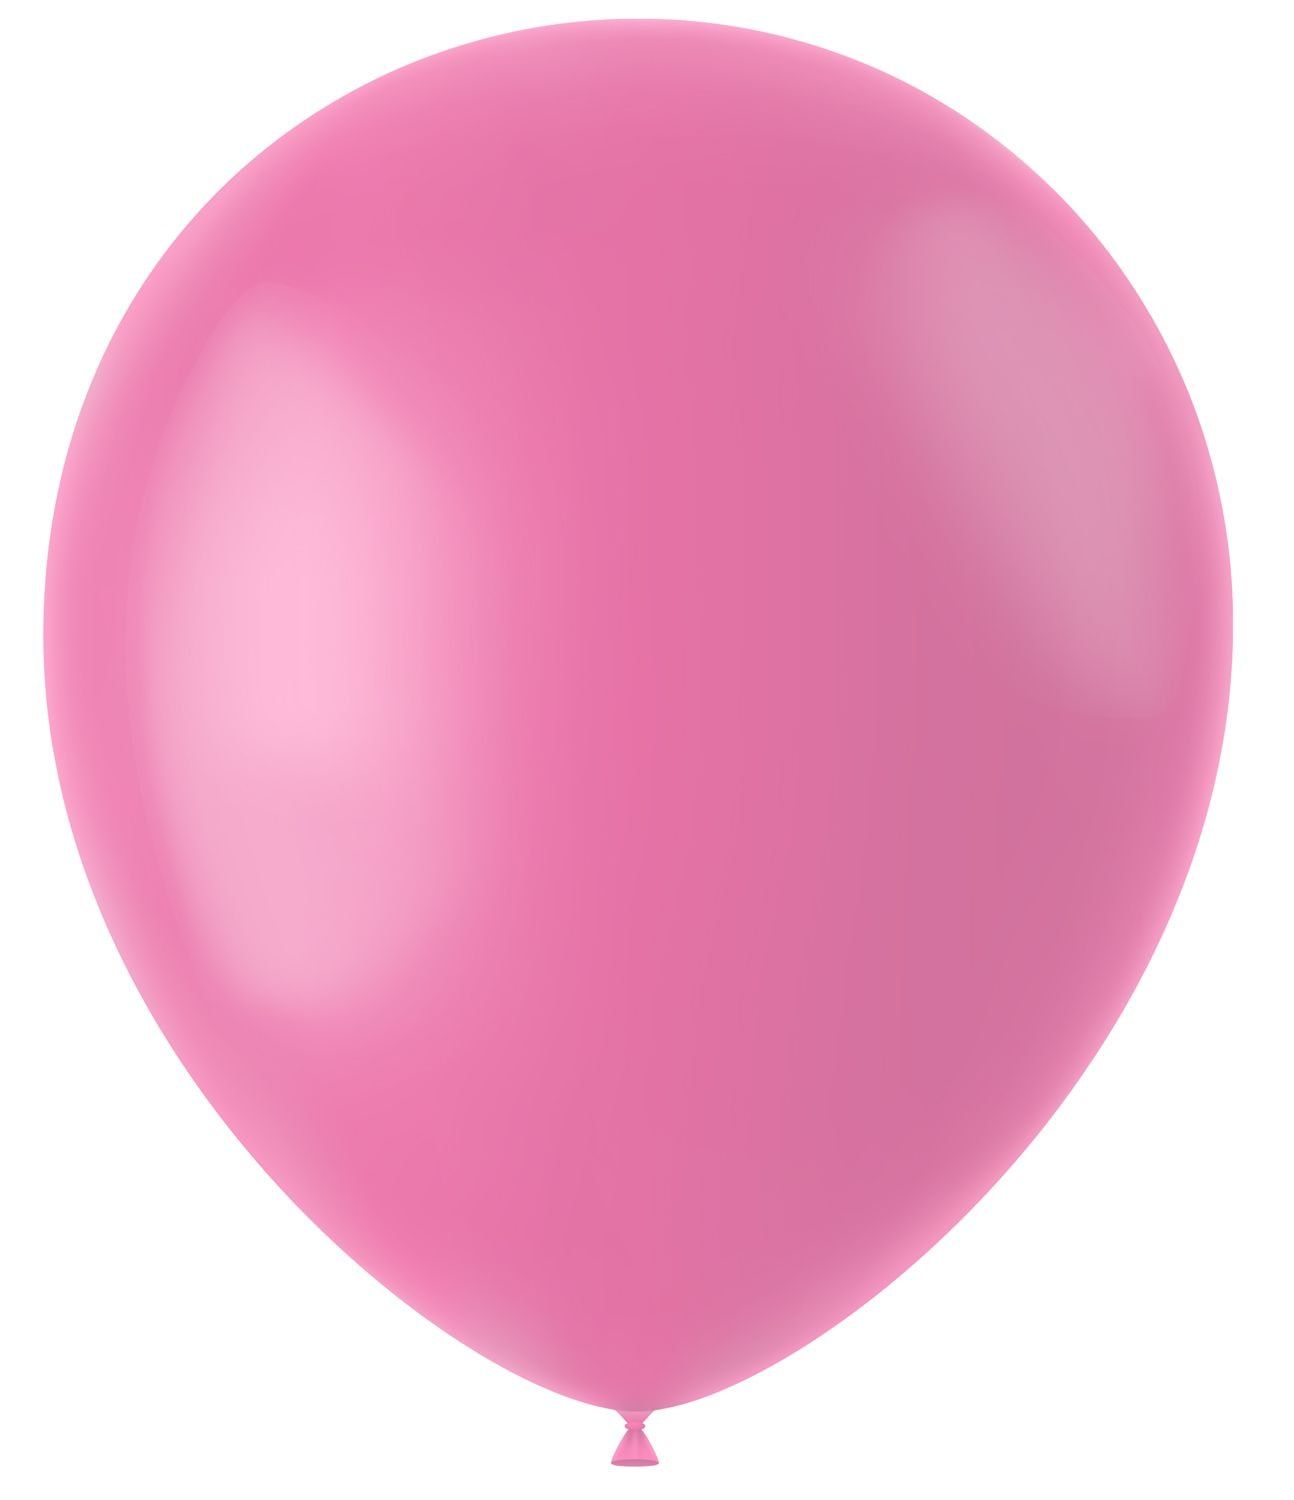 Roze ballonnen matte kleur